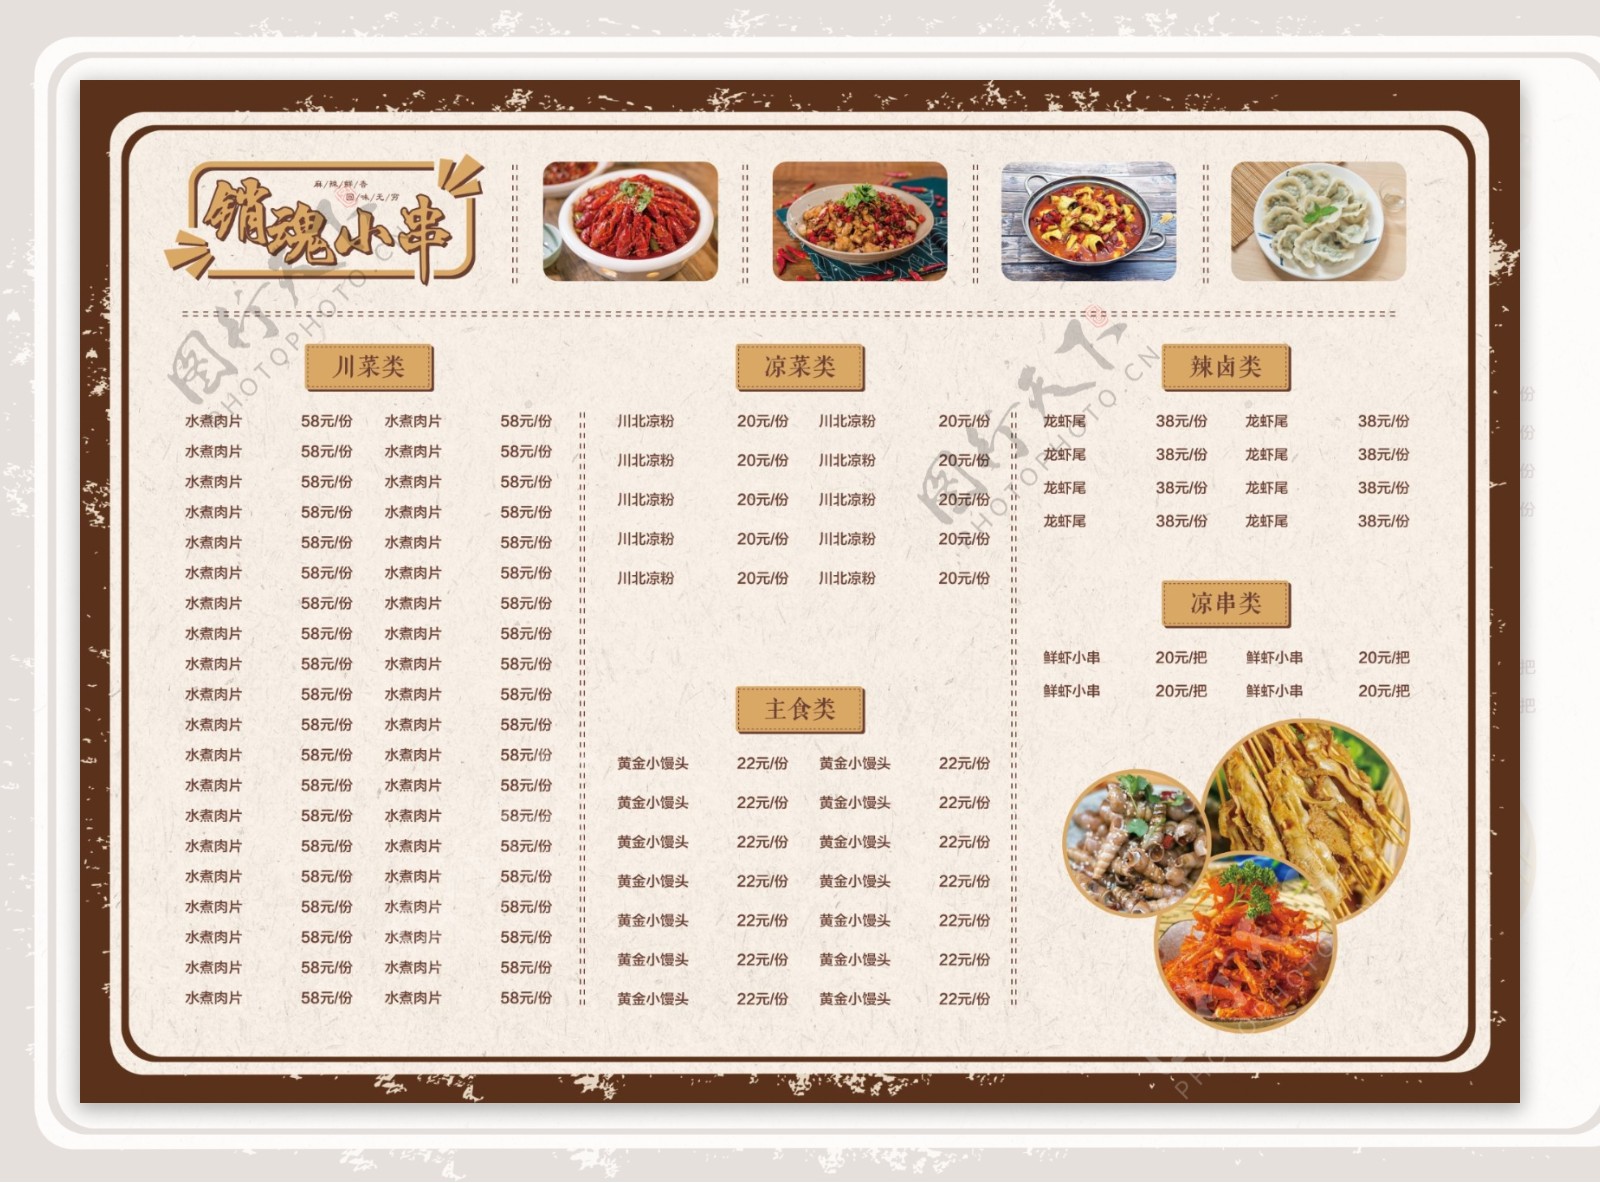 烤串烧烤中餐咖色双面菜单菜谱图片